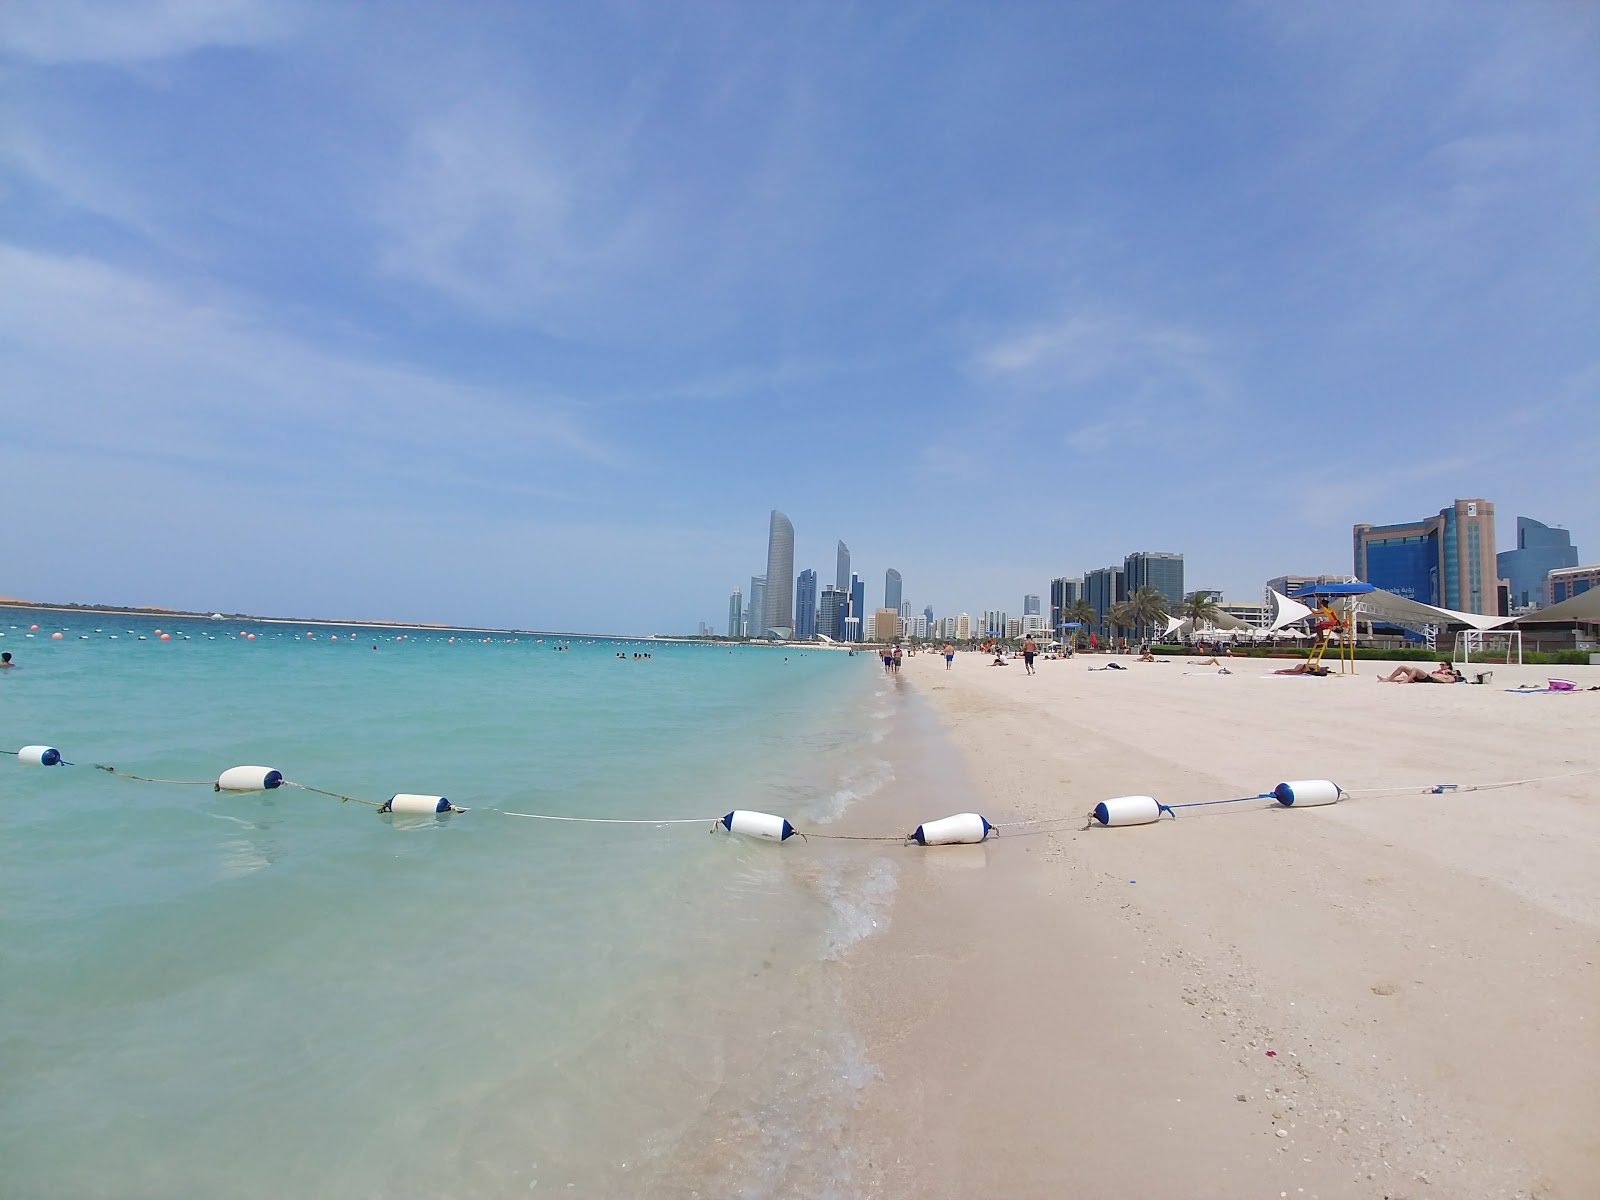 Corniche beach'in fotoğrafı geniş plaj ile birlikte